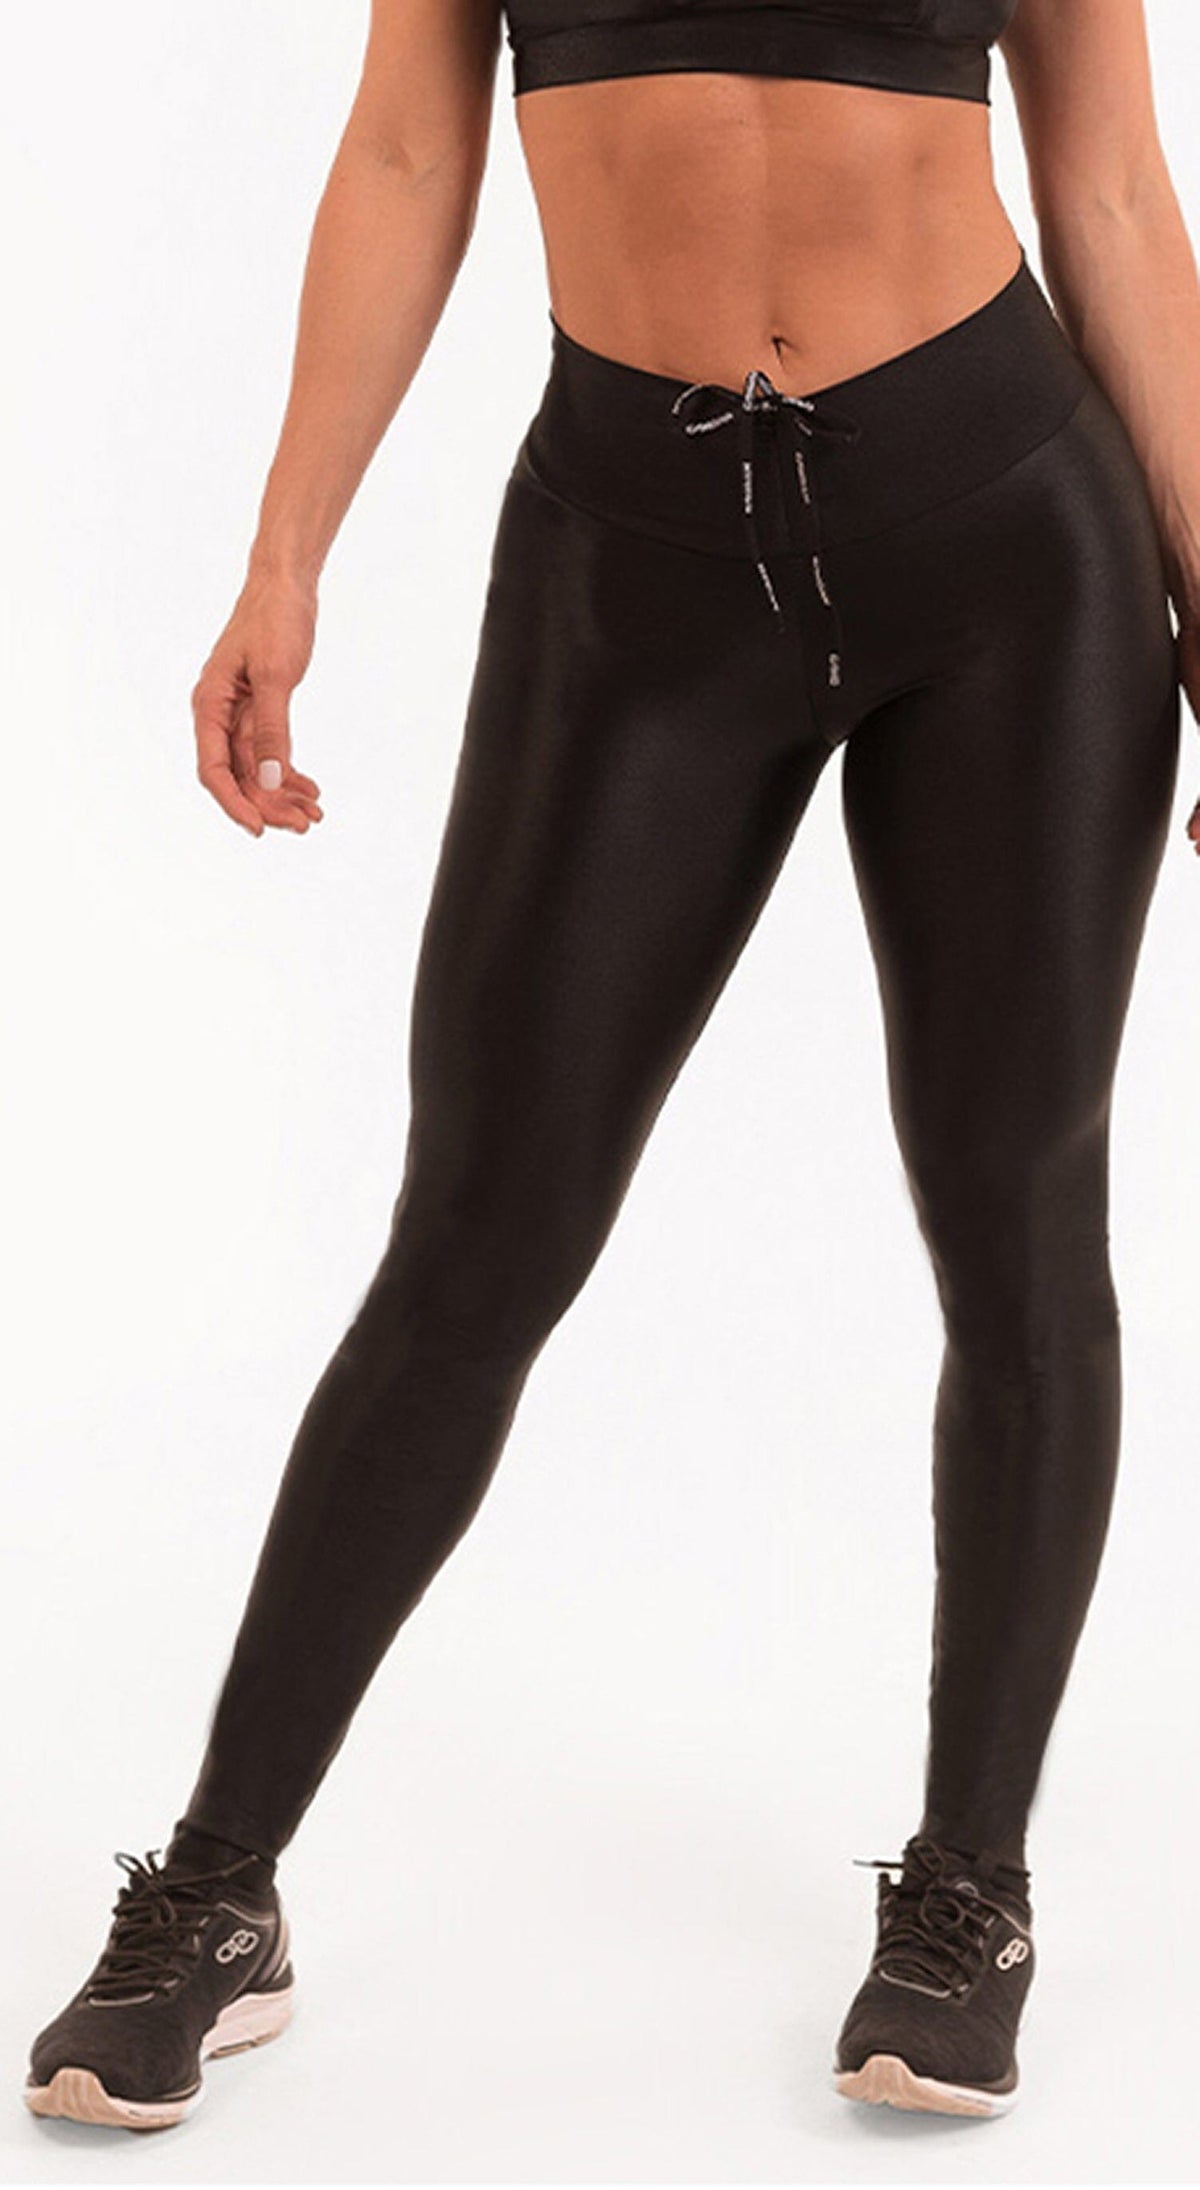 black leggings cut out hipkini high waist